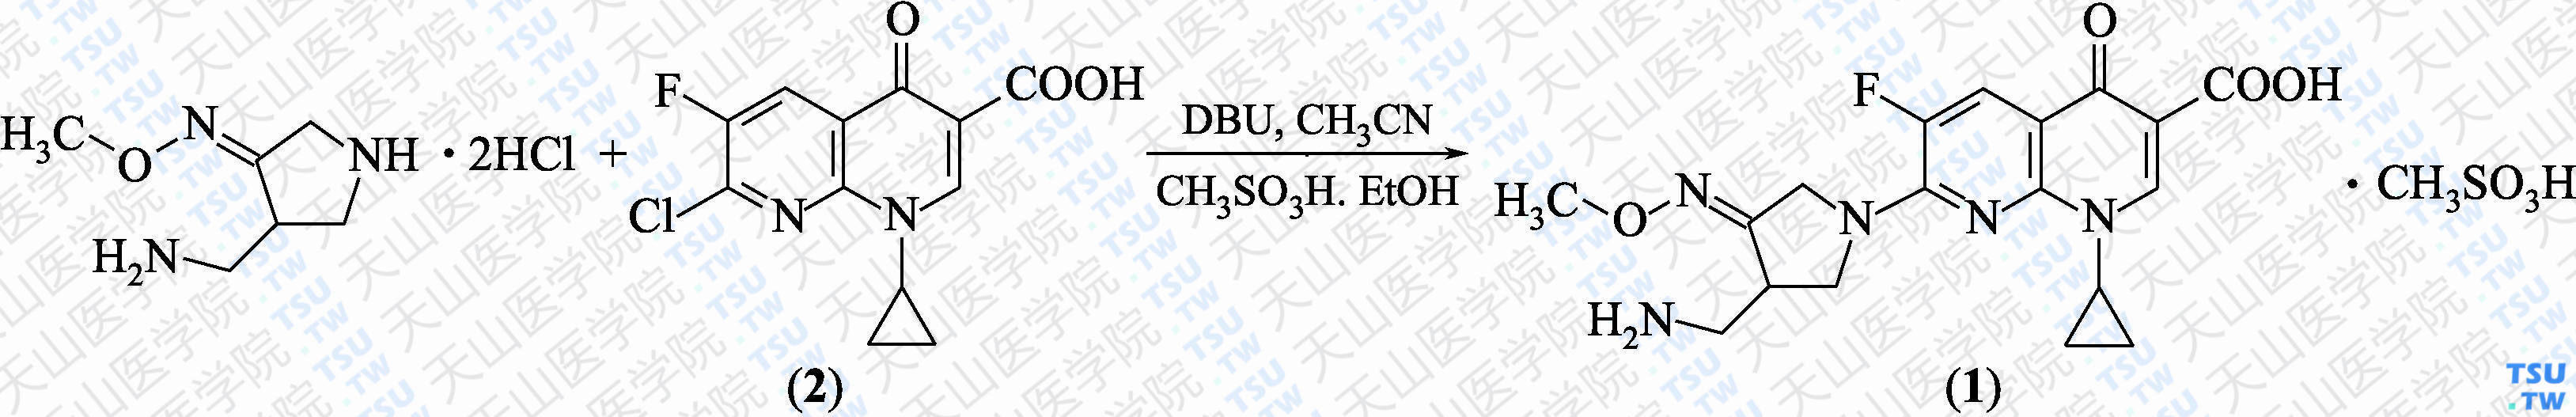 甲磺酸吉米沙星（分子式：C<sub>18</sub>H<sub>20</sub>FN<sub>5</sub>O<sub>4</sub>CH<sub>3</sub>SO<sub>3</sub>H）的合成方法路线及其结构式